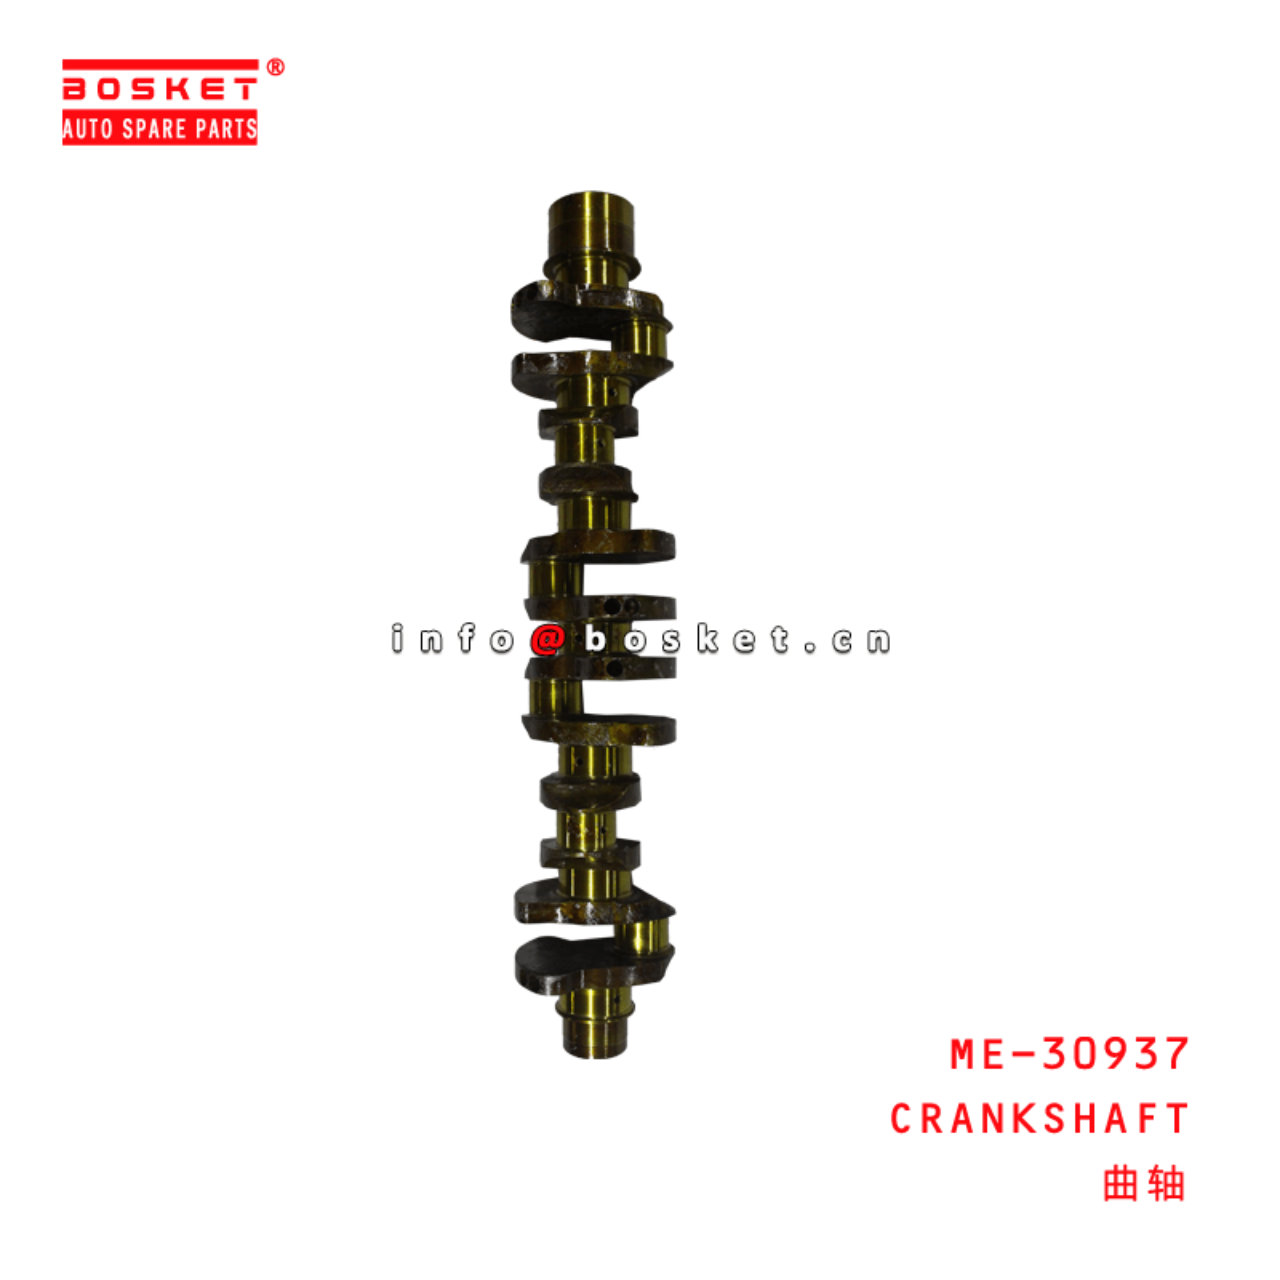  ME-30937 Crankshaft ME130937 Suitable for ISUZU 6D16T